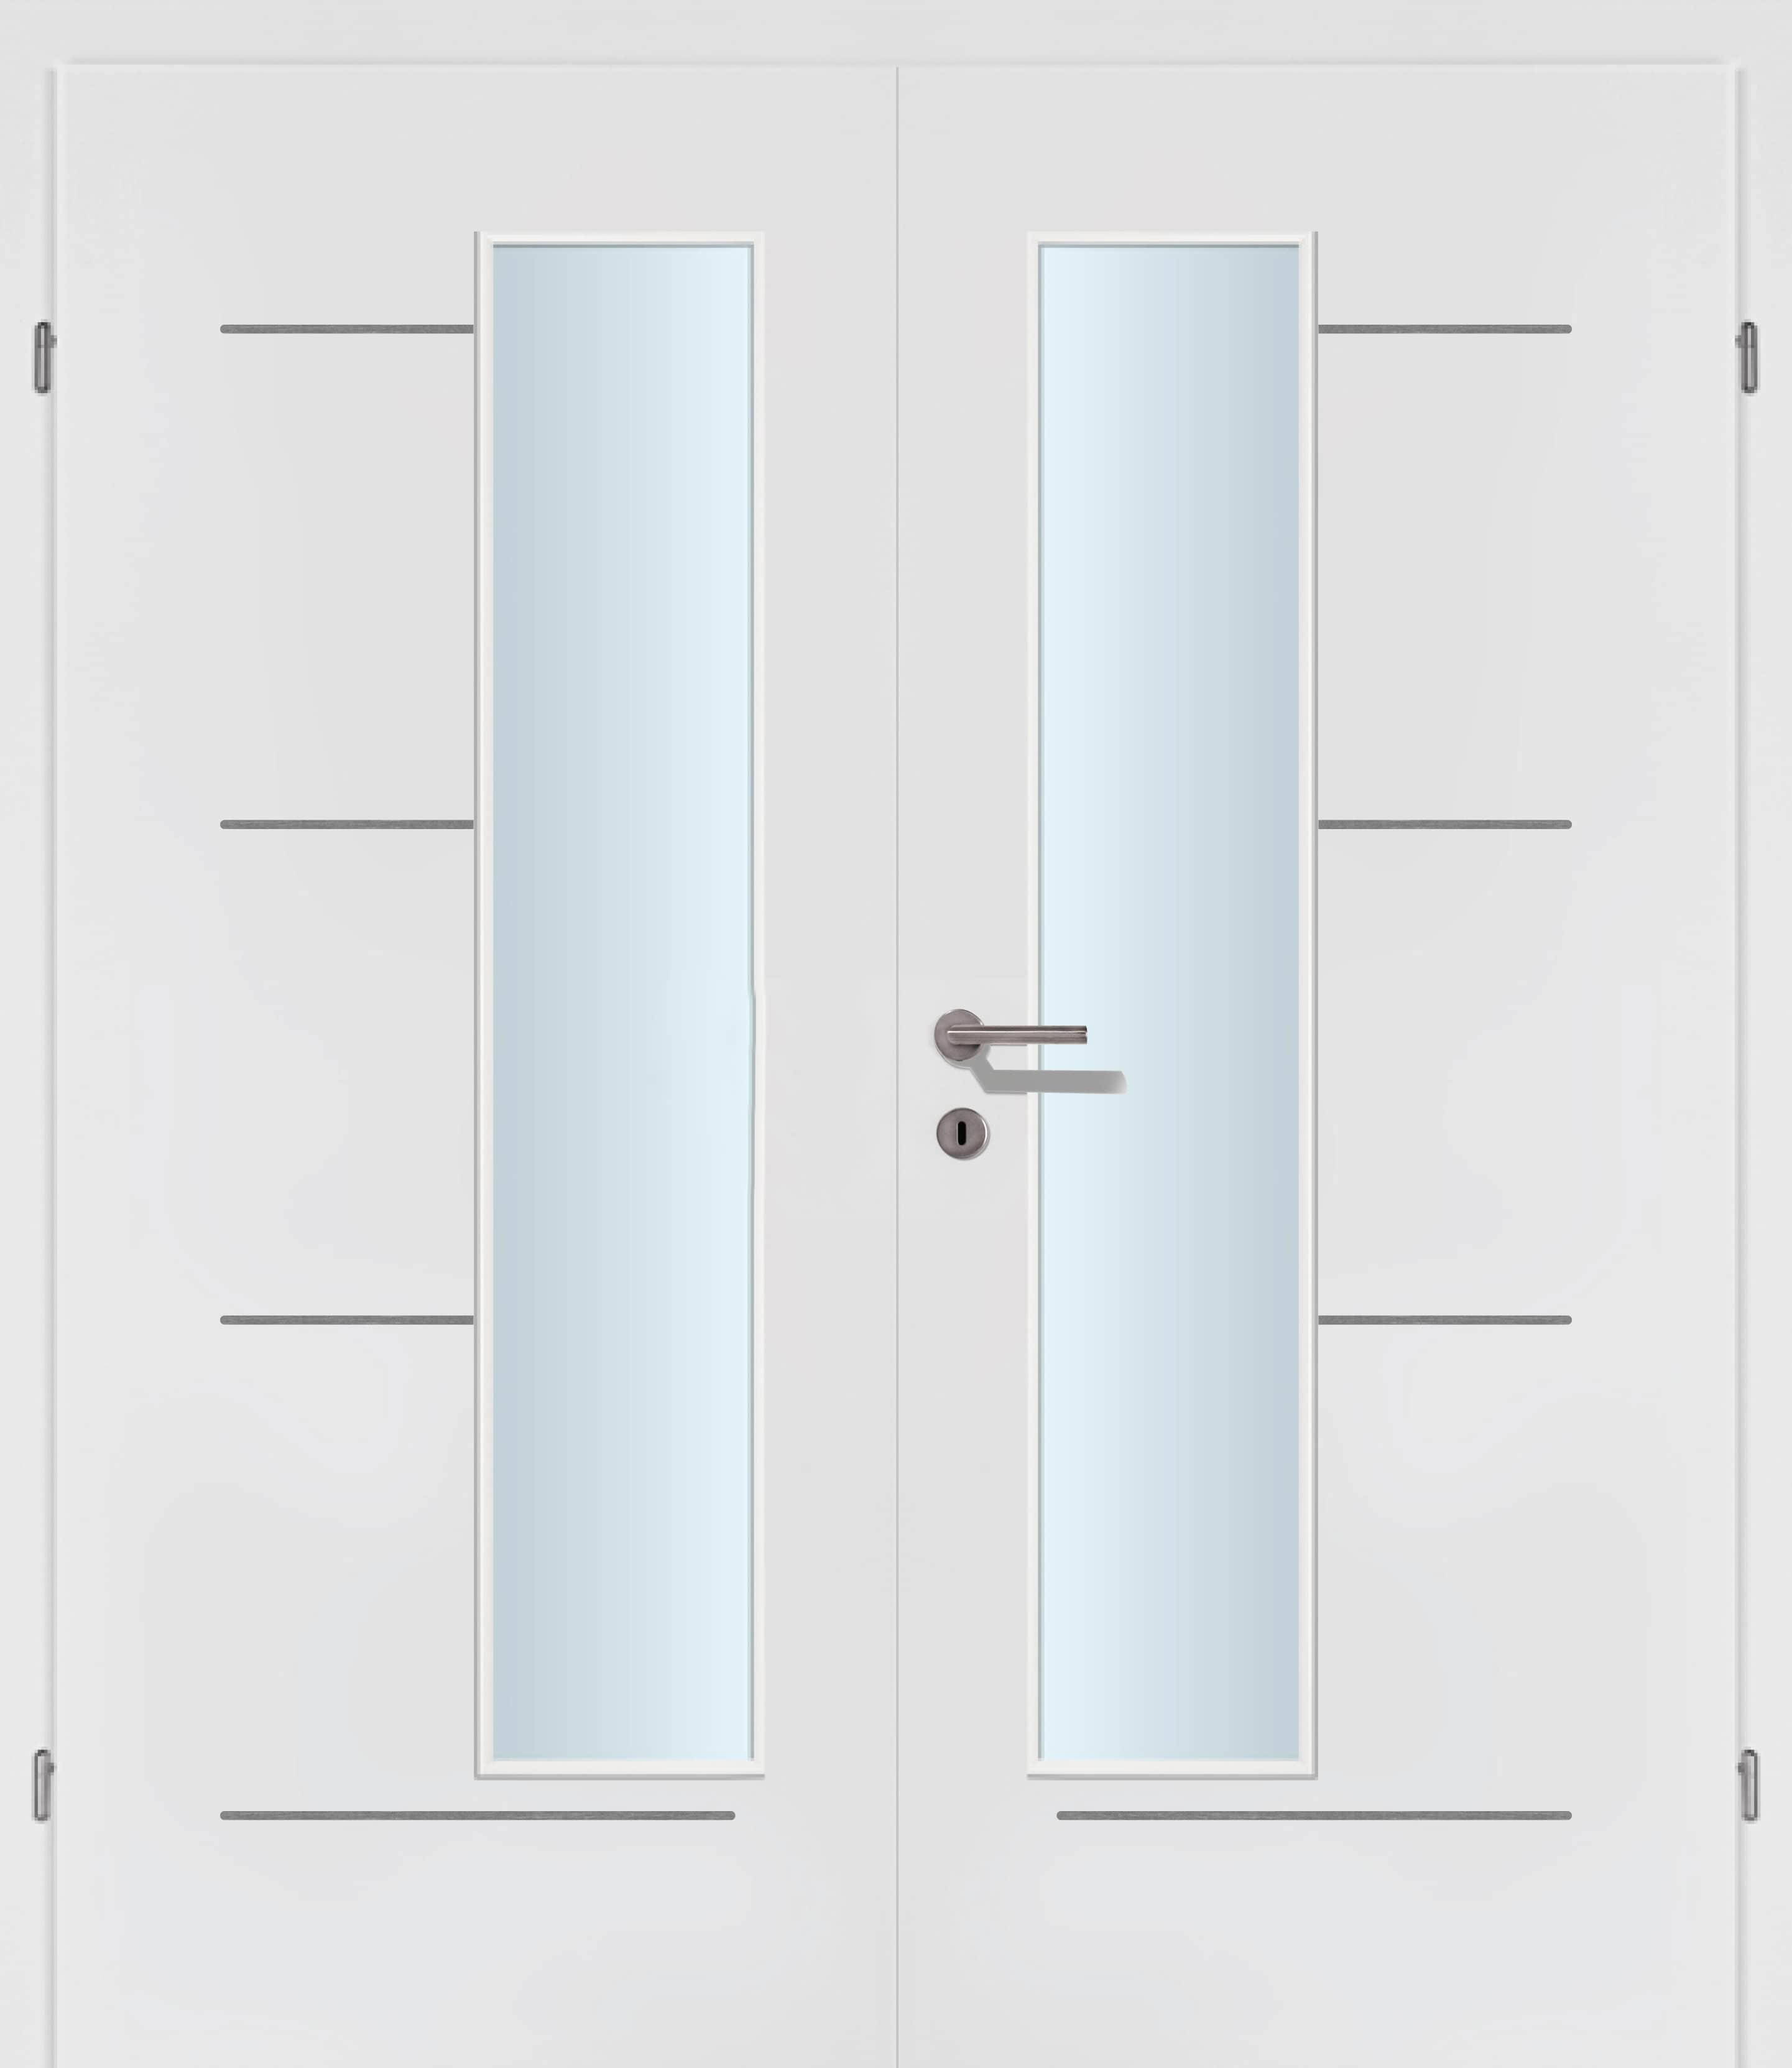 Selektion T49 Alu Effekt Lisenen weiss Innentür Inkl. Zarge (Türrahmen) Doppeltüre Inkl. Glaslichte EN Drückerseitig